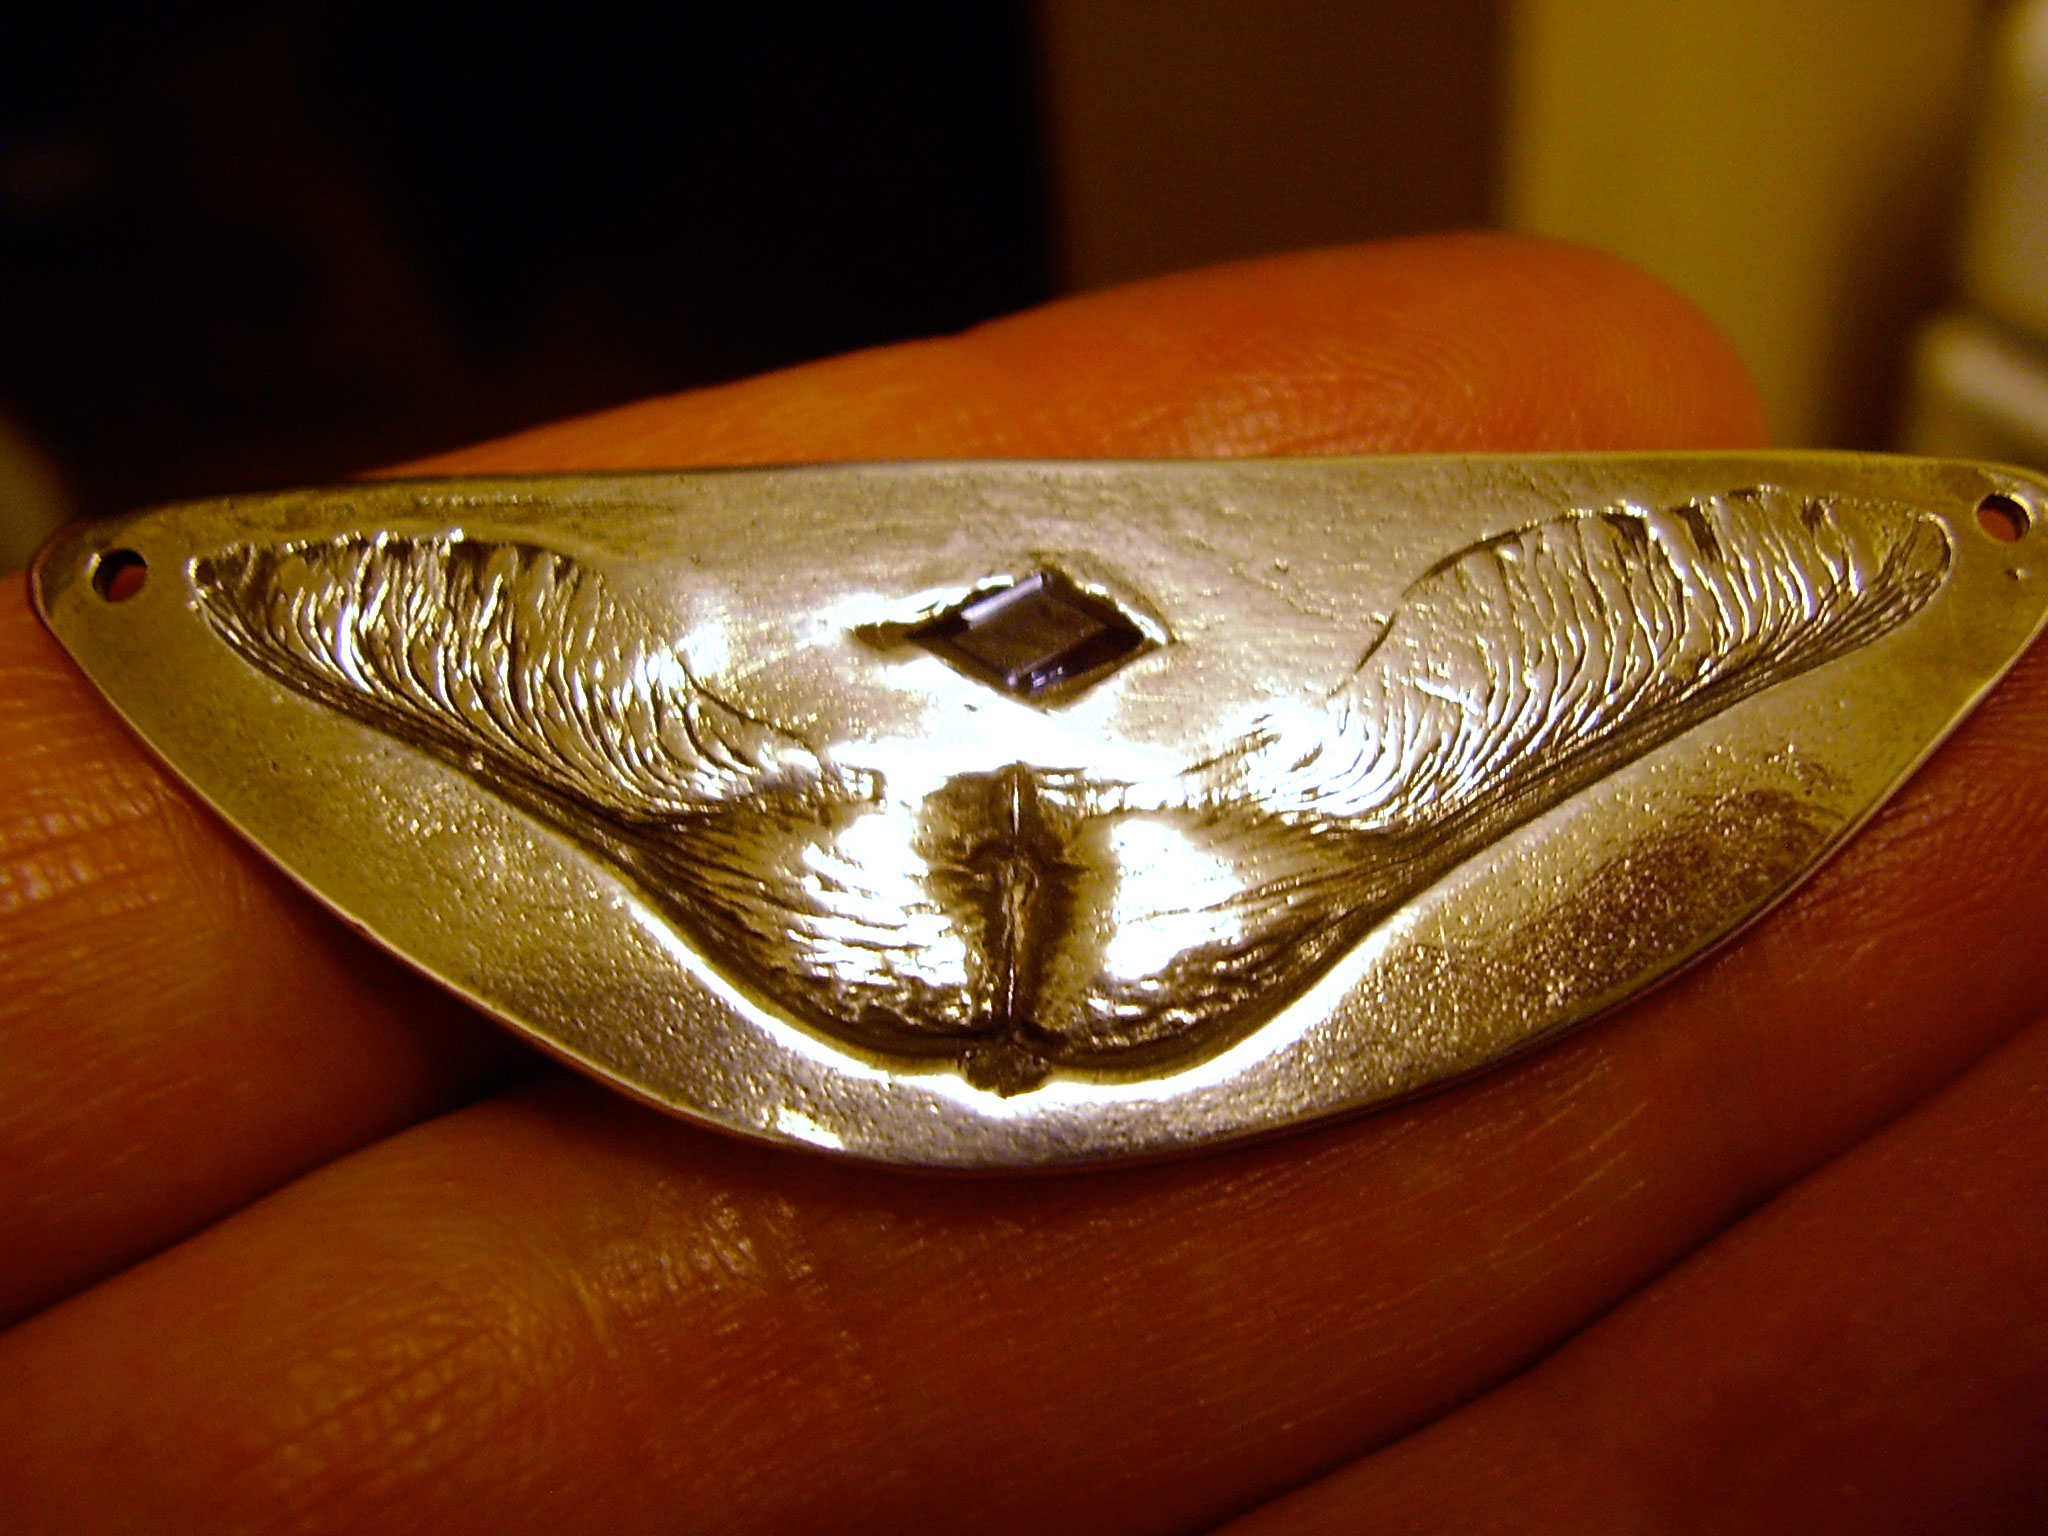 The finished Maple Key pendant